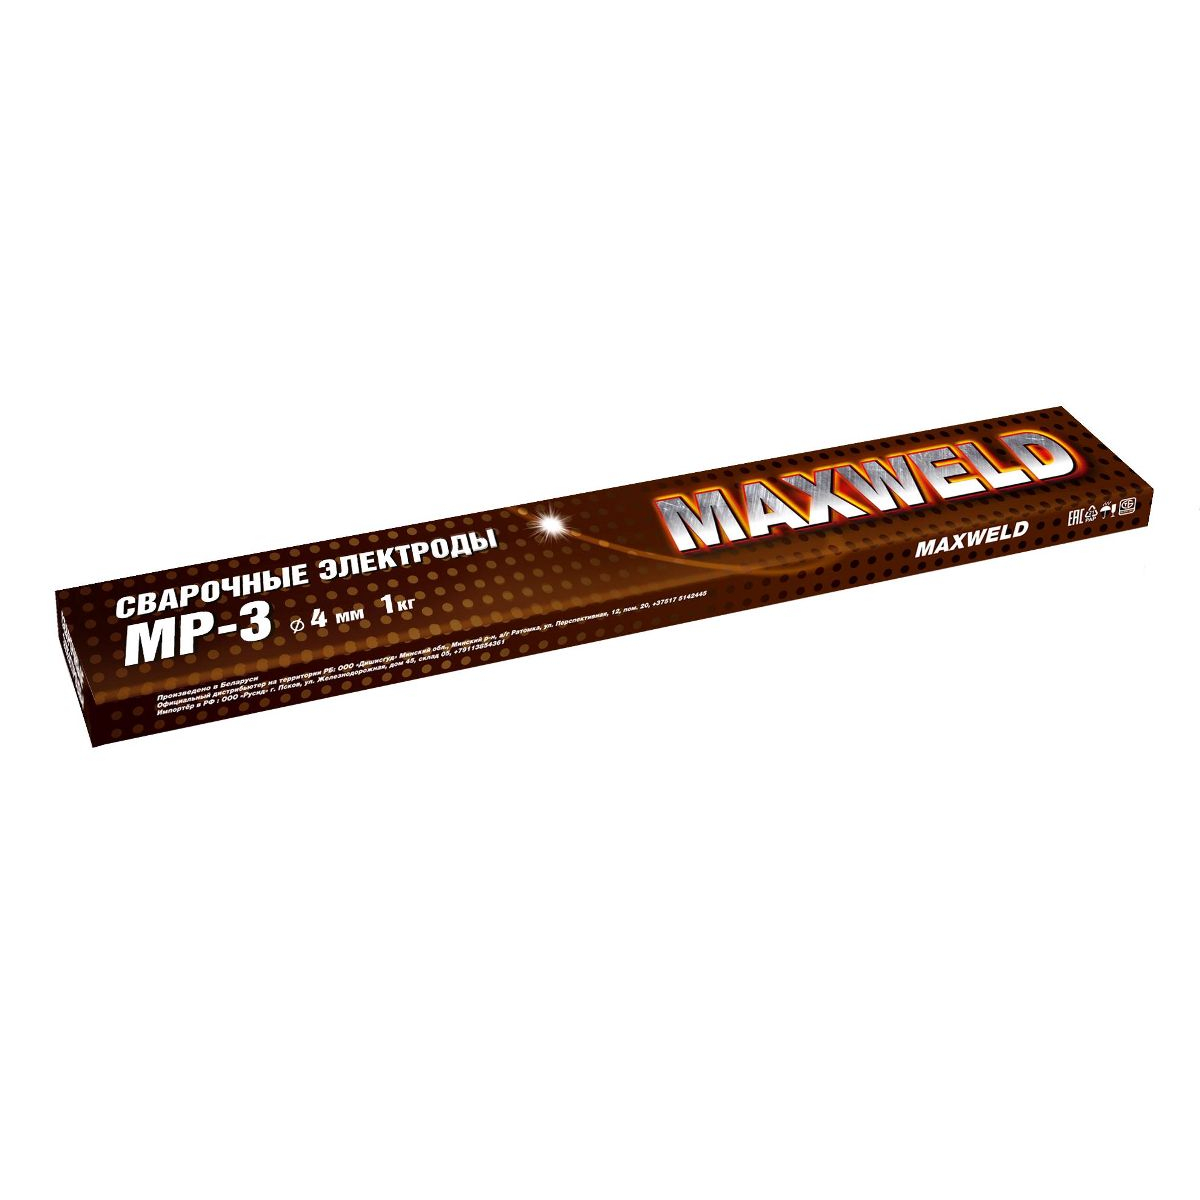 электроды maxweld мр 3 Электроды Maxweld СТАЛЬ МР-3 4мм, 1 кг